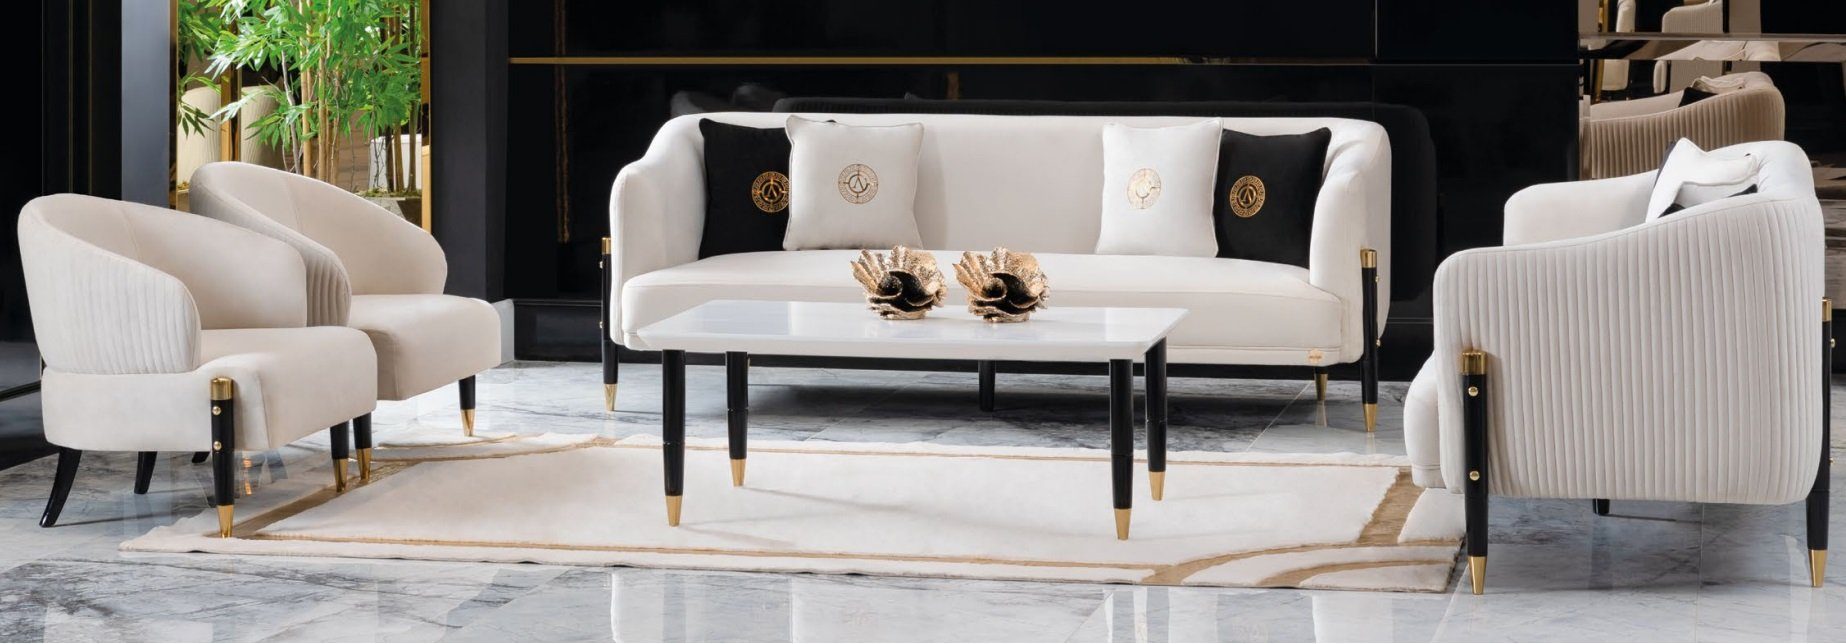 JVmoebel Sofa Weiße Sofagarnitur Design Sofas Couch Samt Polster Sitz 3+3+1+1, Made in Europe